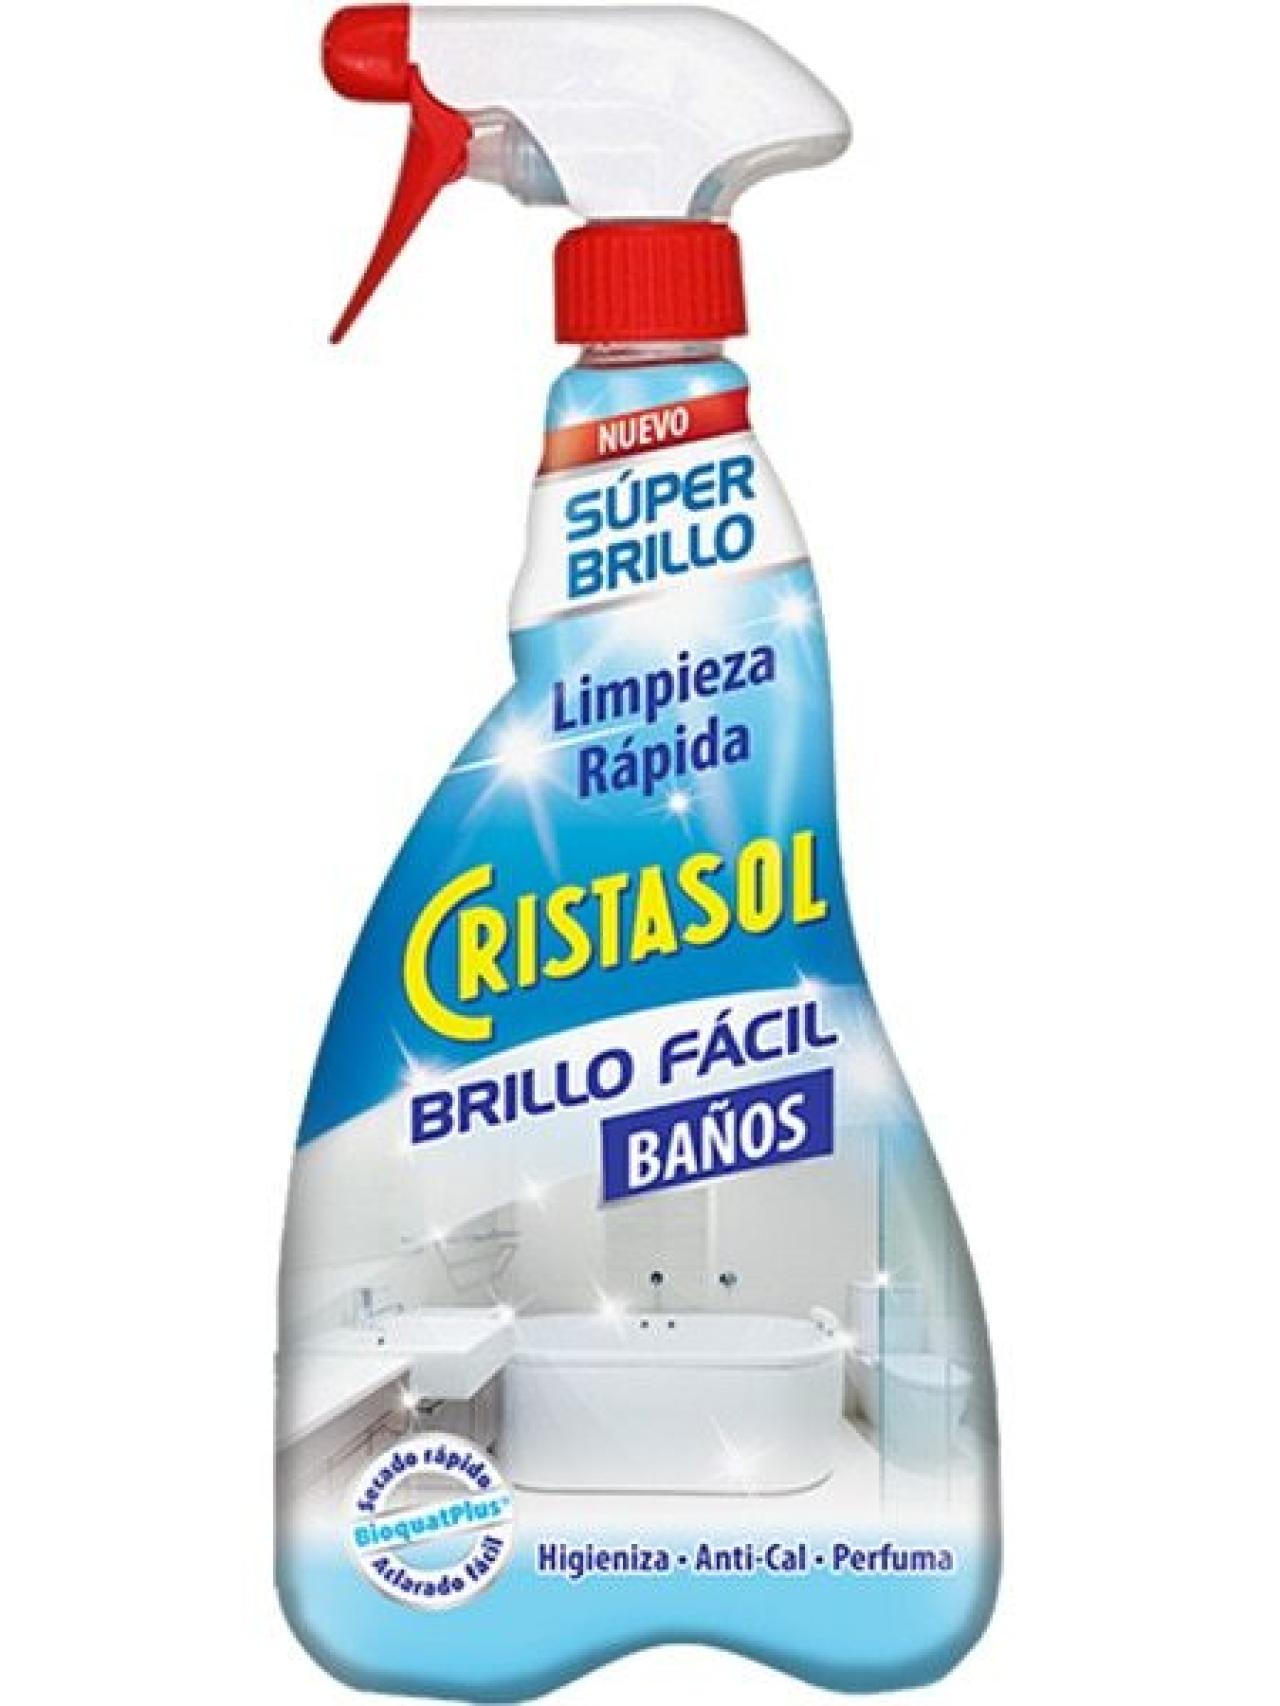 Este es el mejor limpiador para baños del súper, según la OCU: cada botella  cuesta 1,49 euros